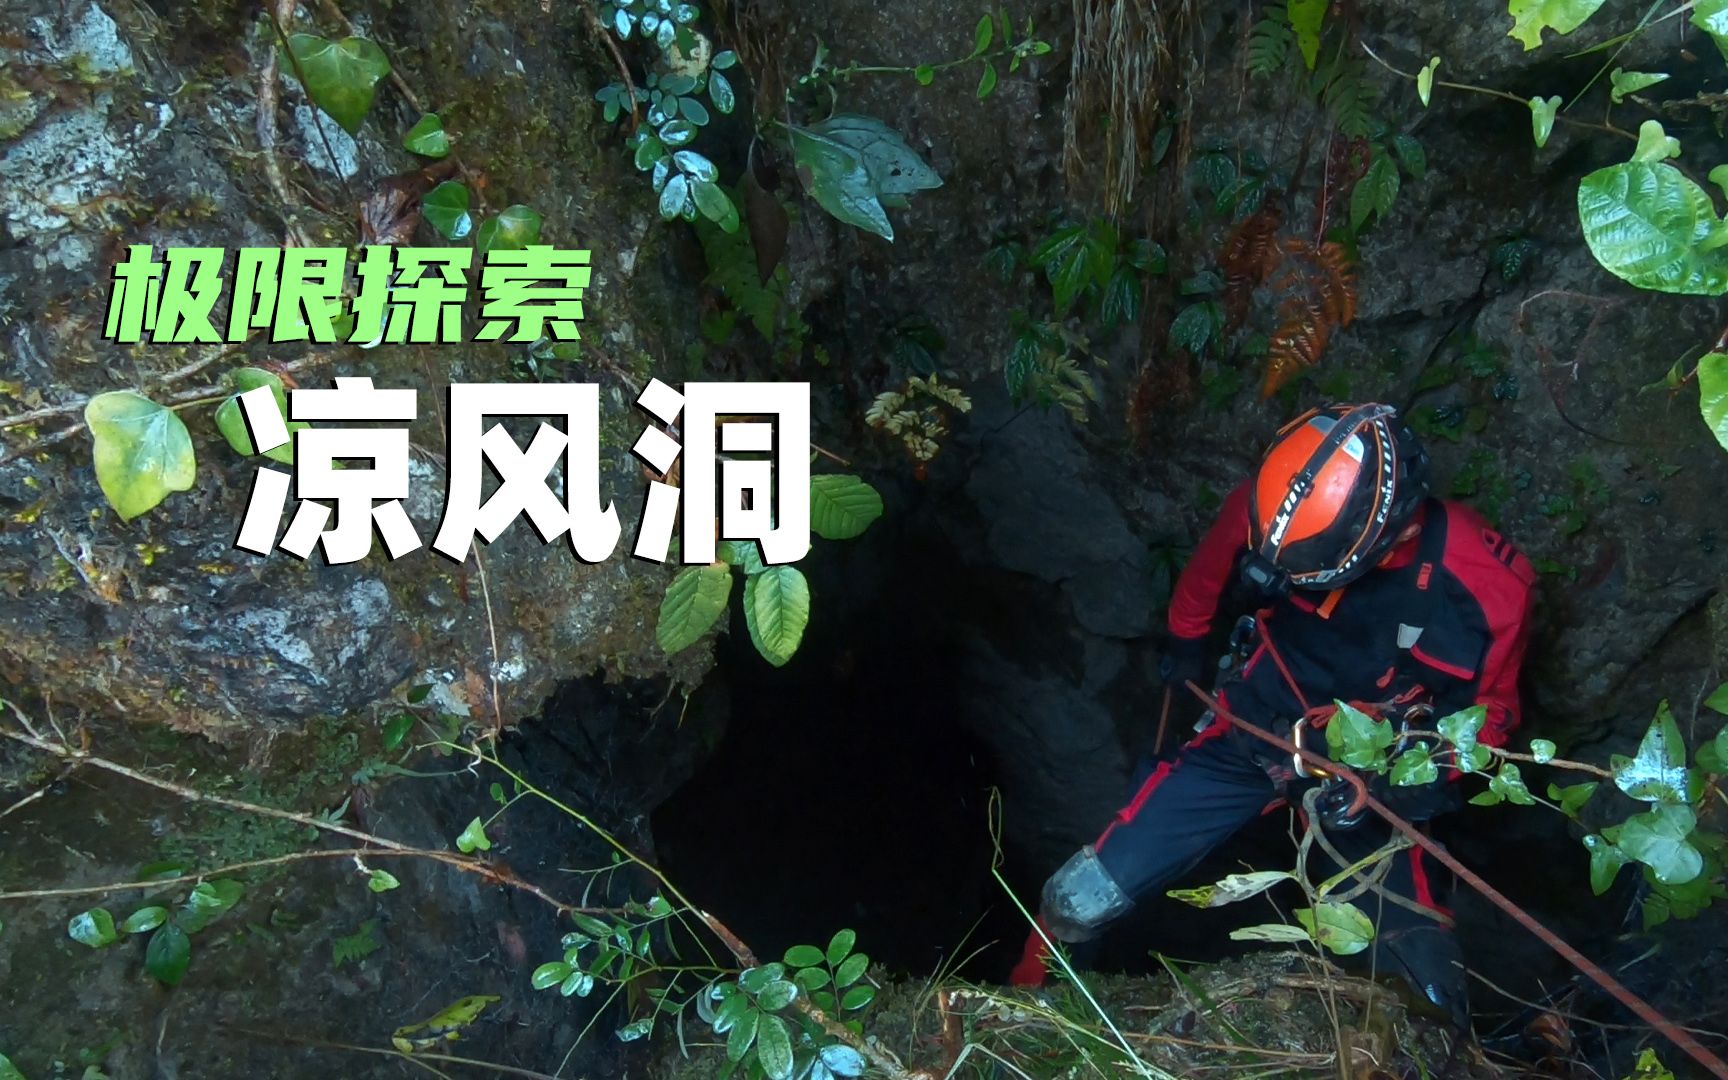 传说一千多米的深坑，下去一探究竟，探索凉风洞